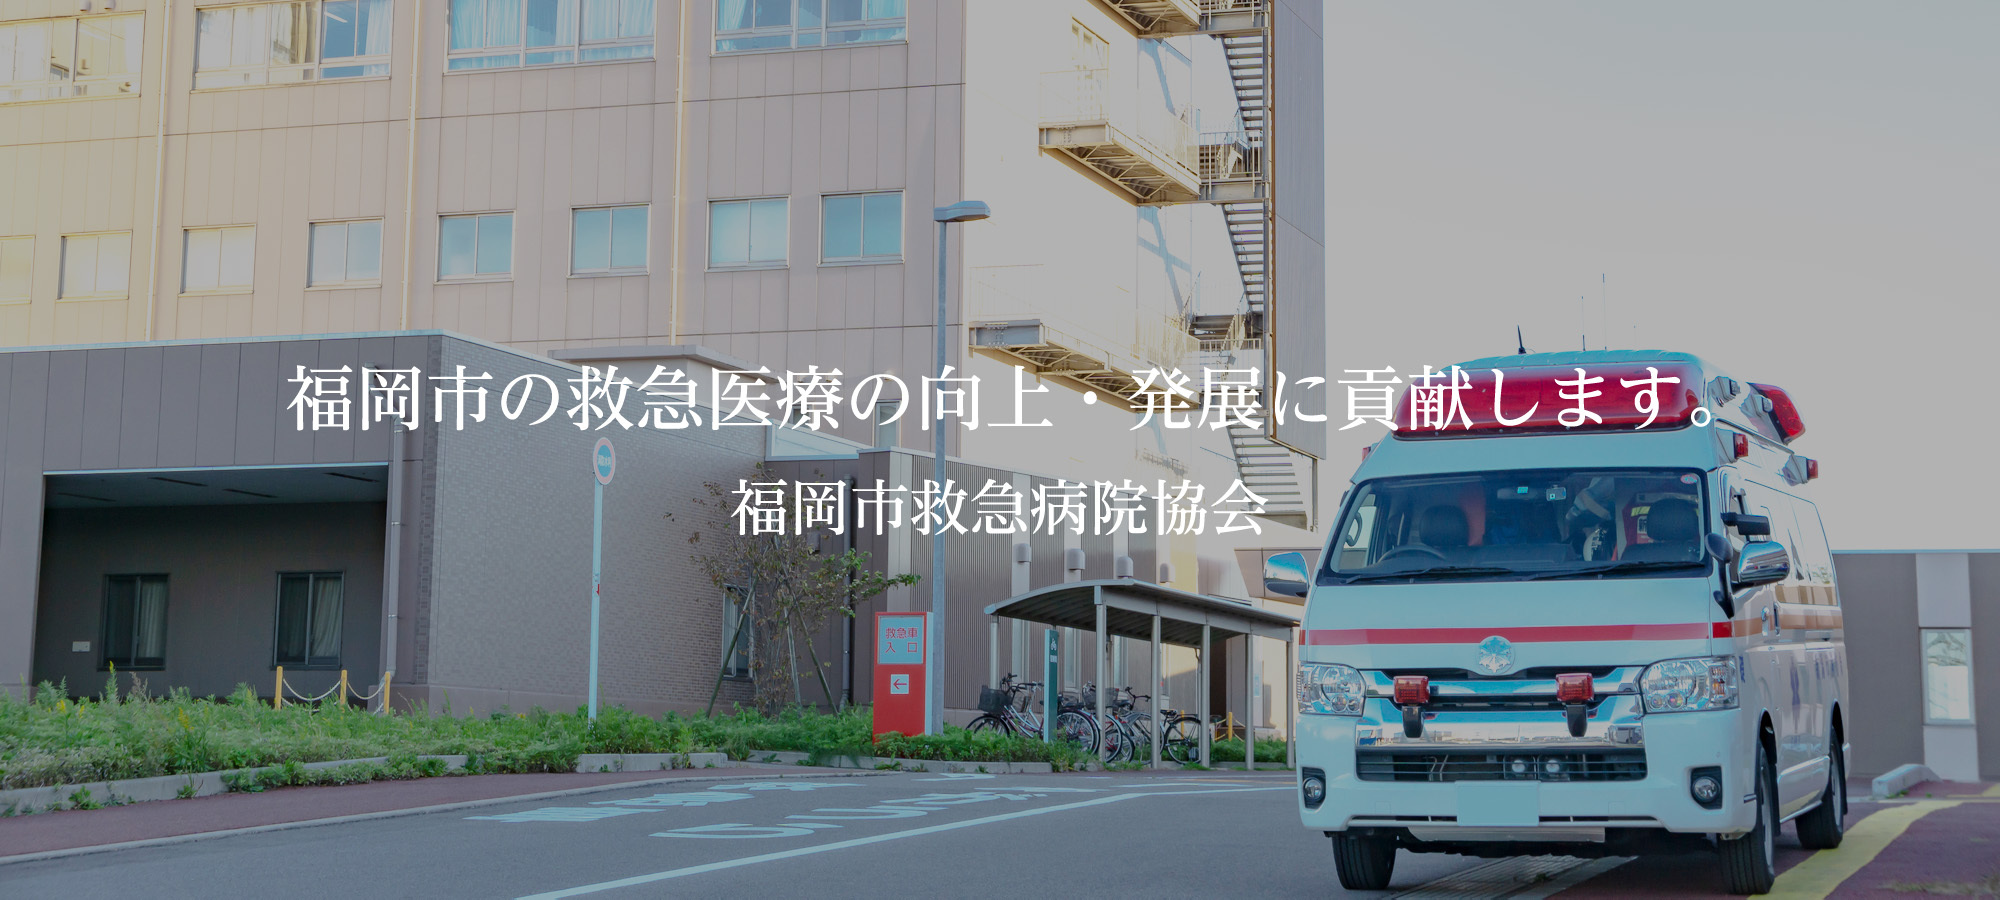 福岡市の救急医療の向上・発展に貢献します。